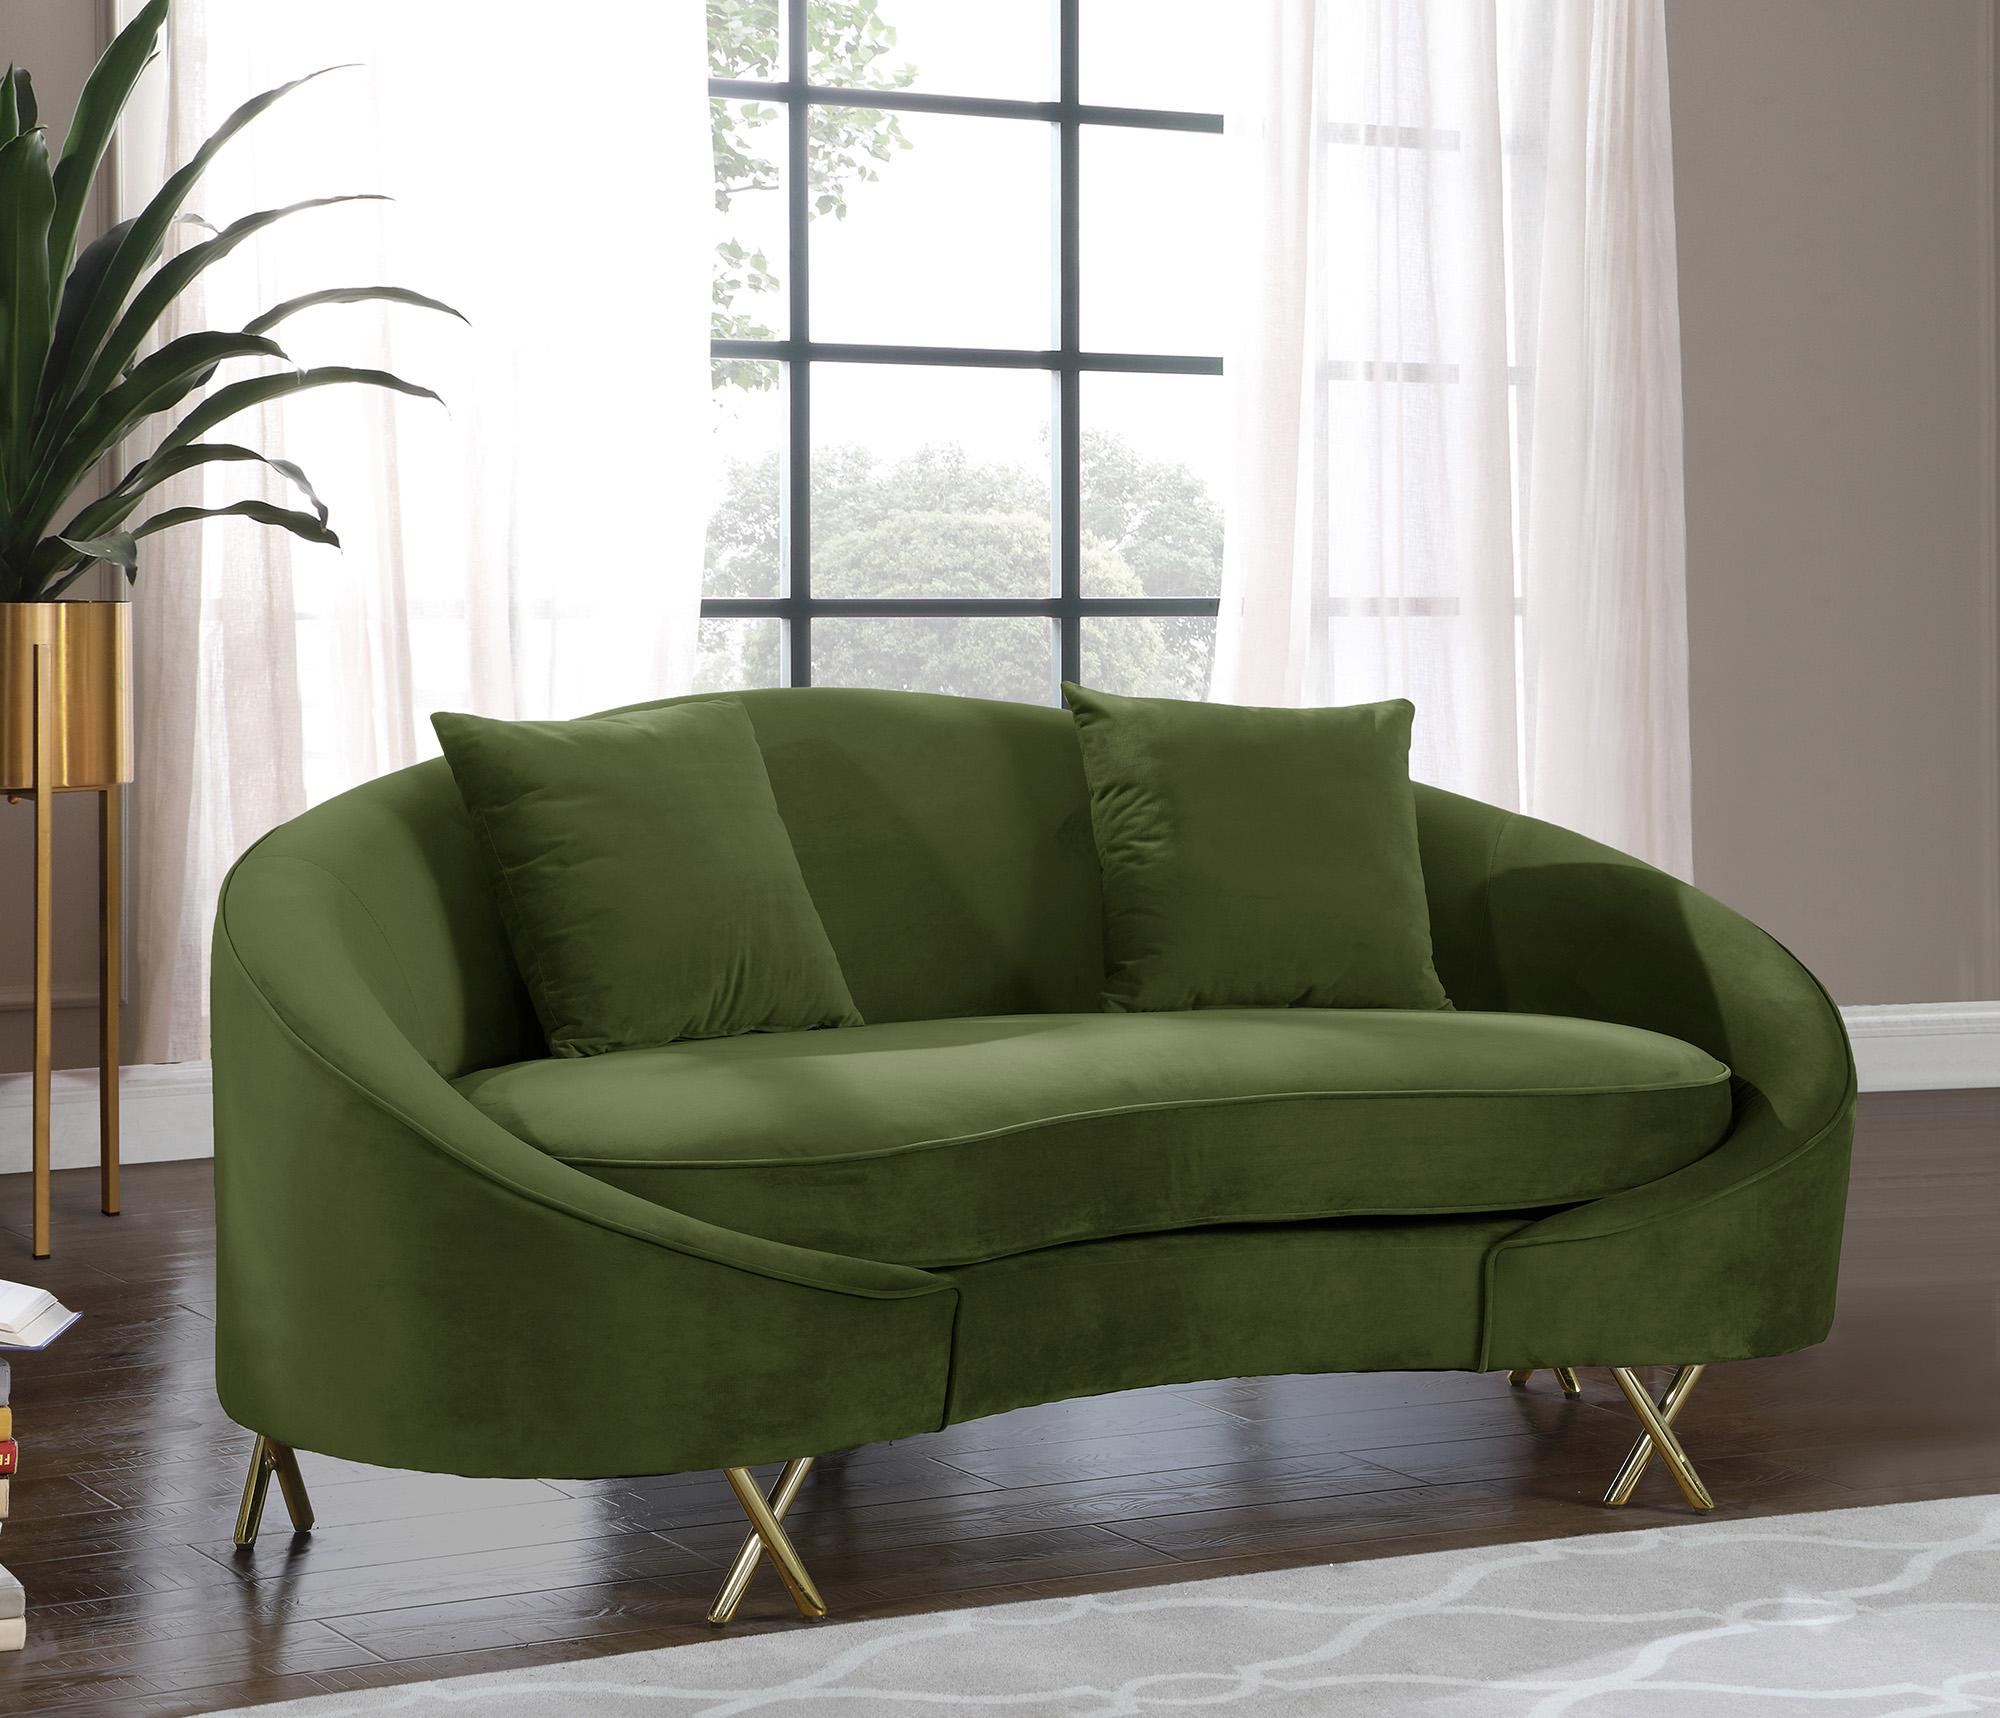 

    
Meridian Furniture SERPENTINE 679Olive-S-Set-3 Sofa Set Olive 679Olive-S-Set-3
